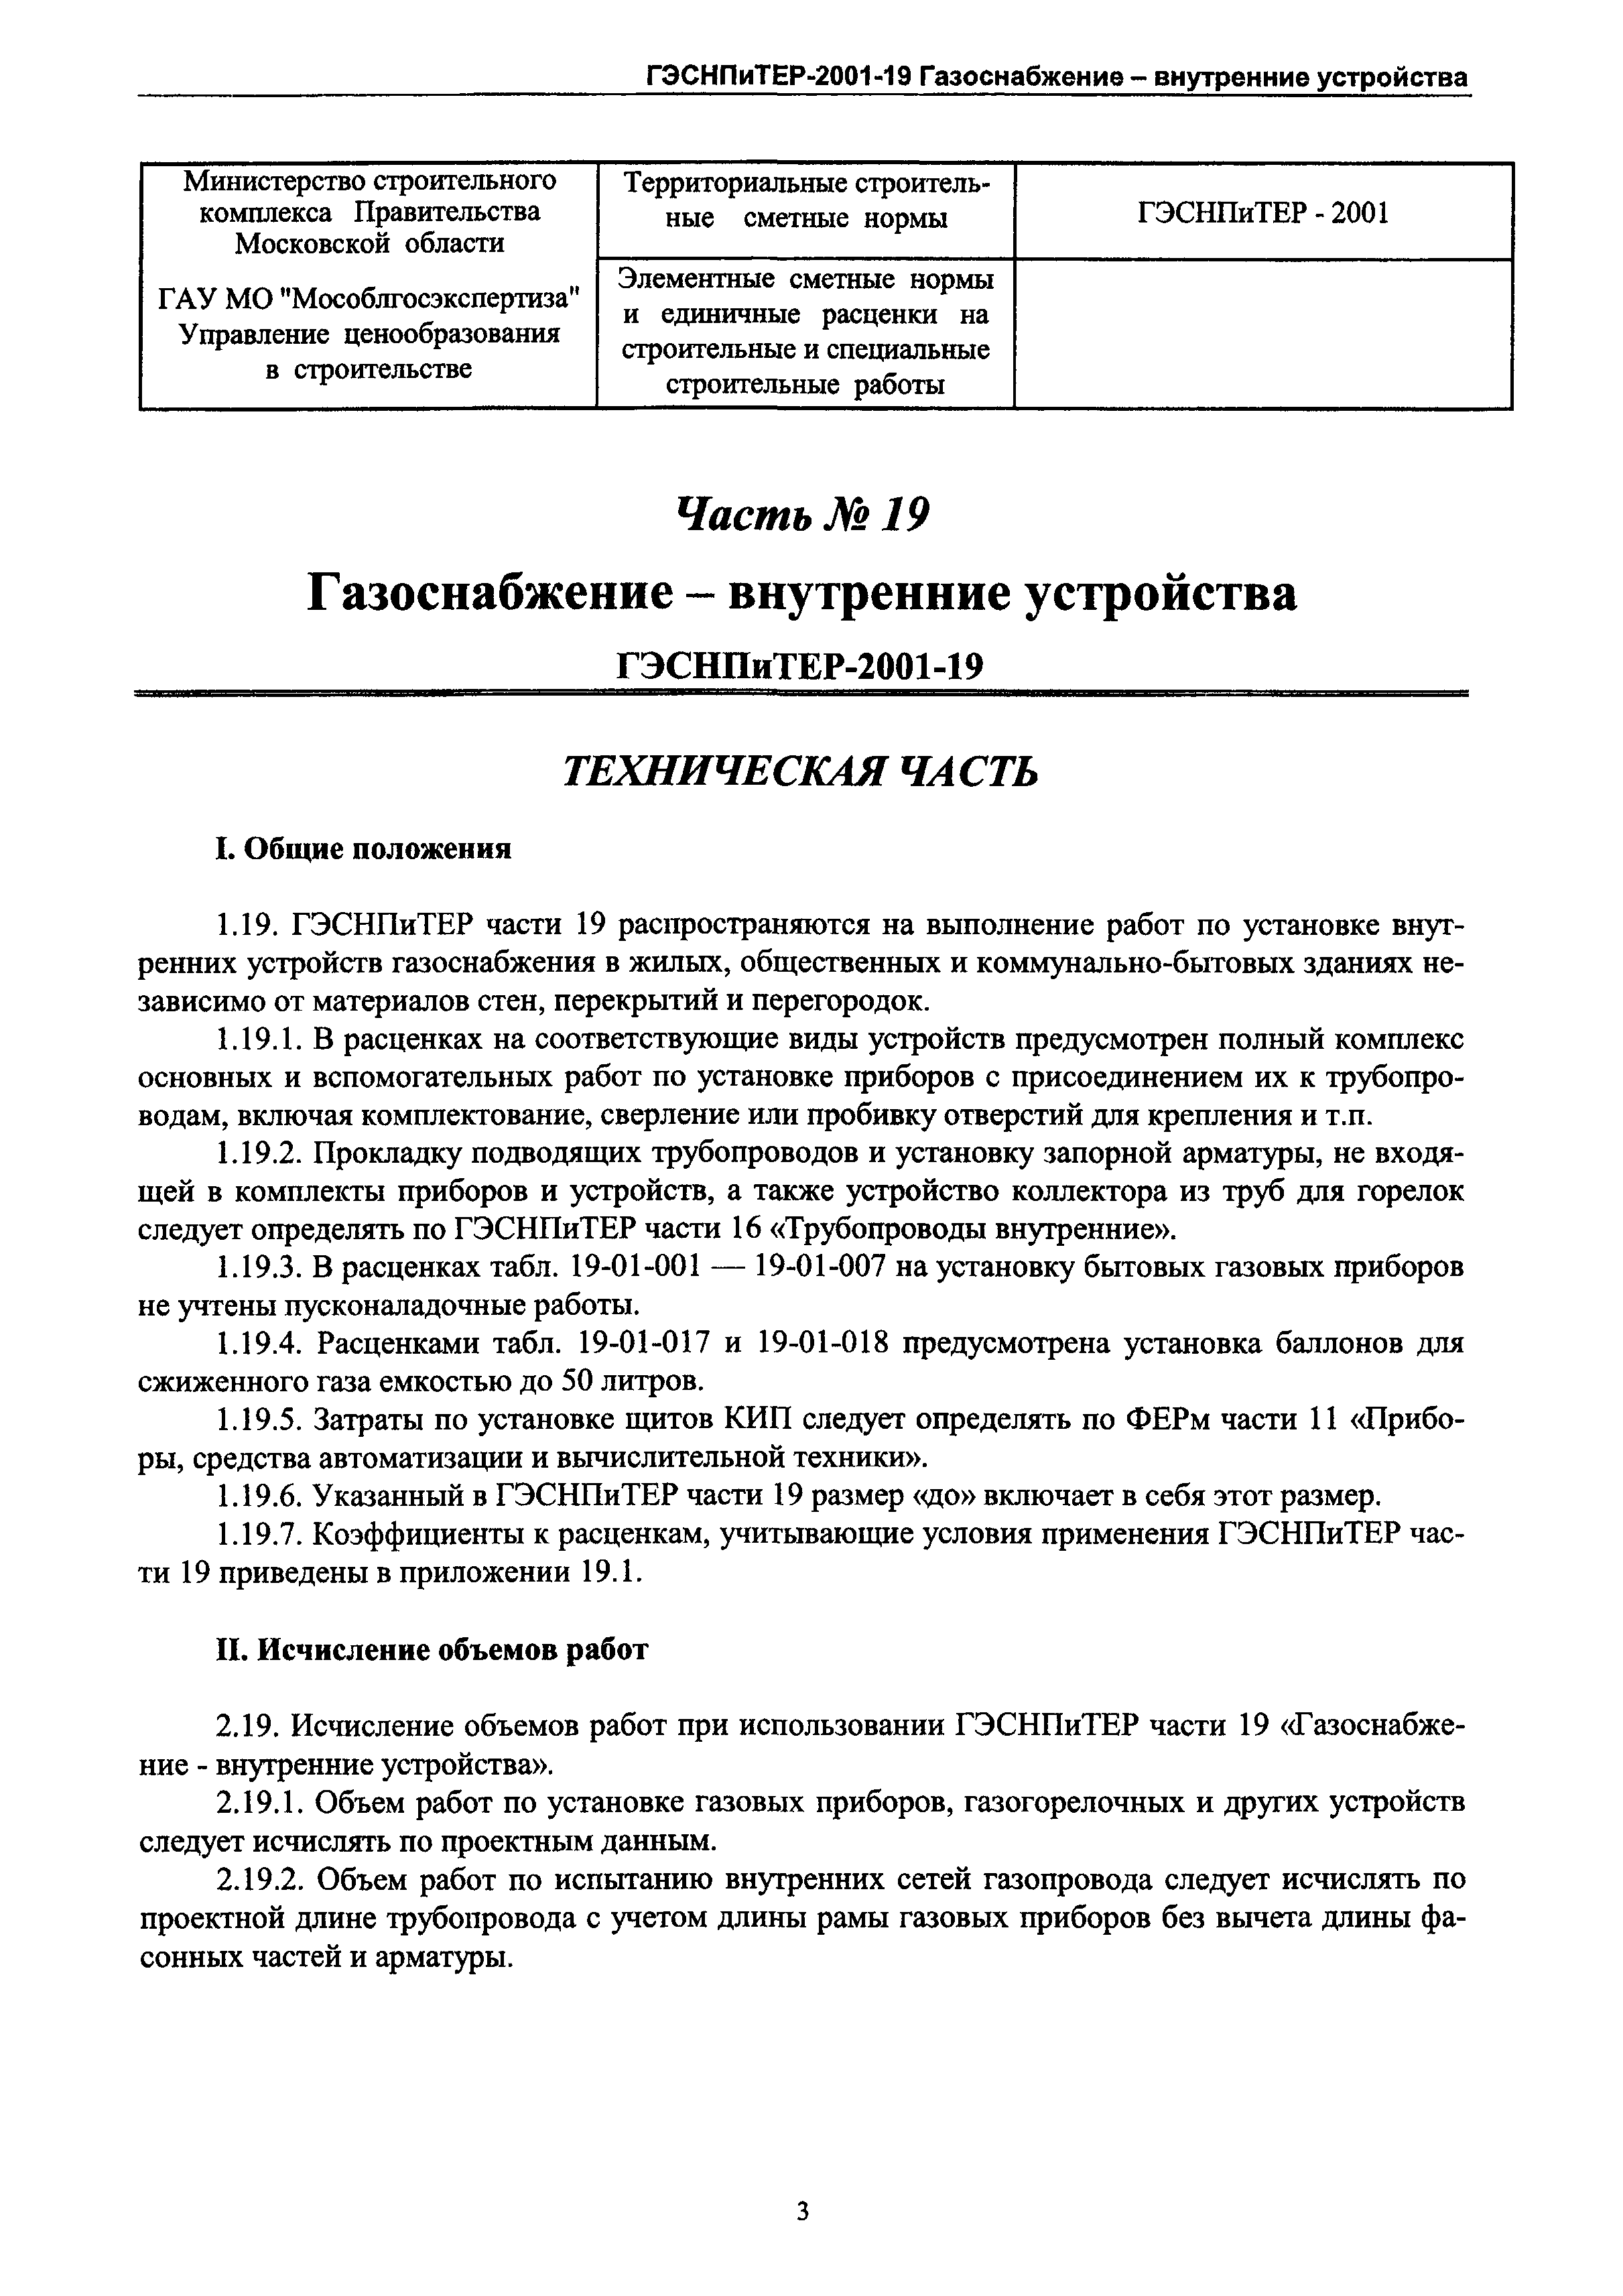 ГЭСНПиТЕР 2001-19 Московской области